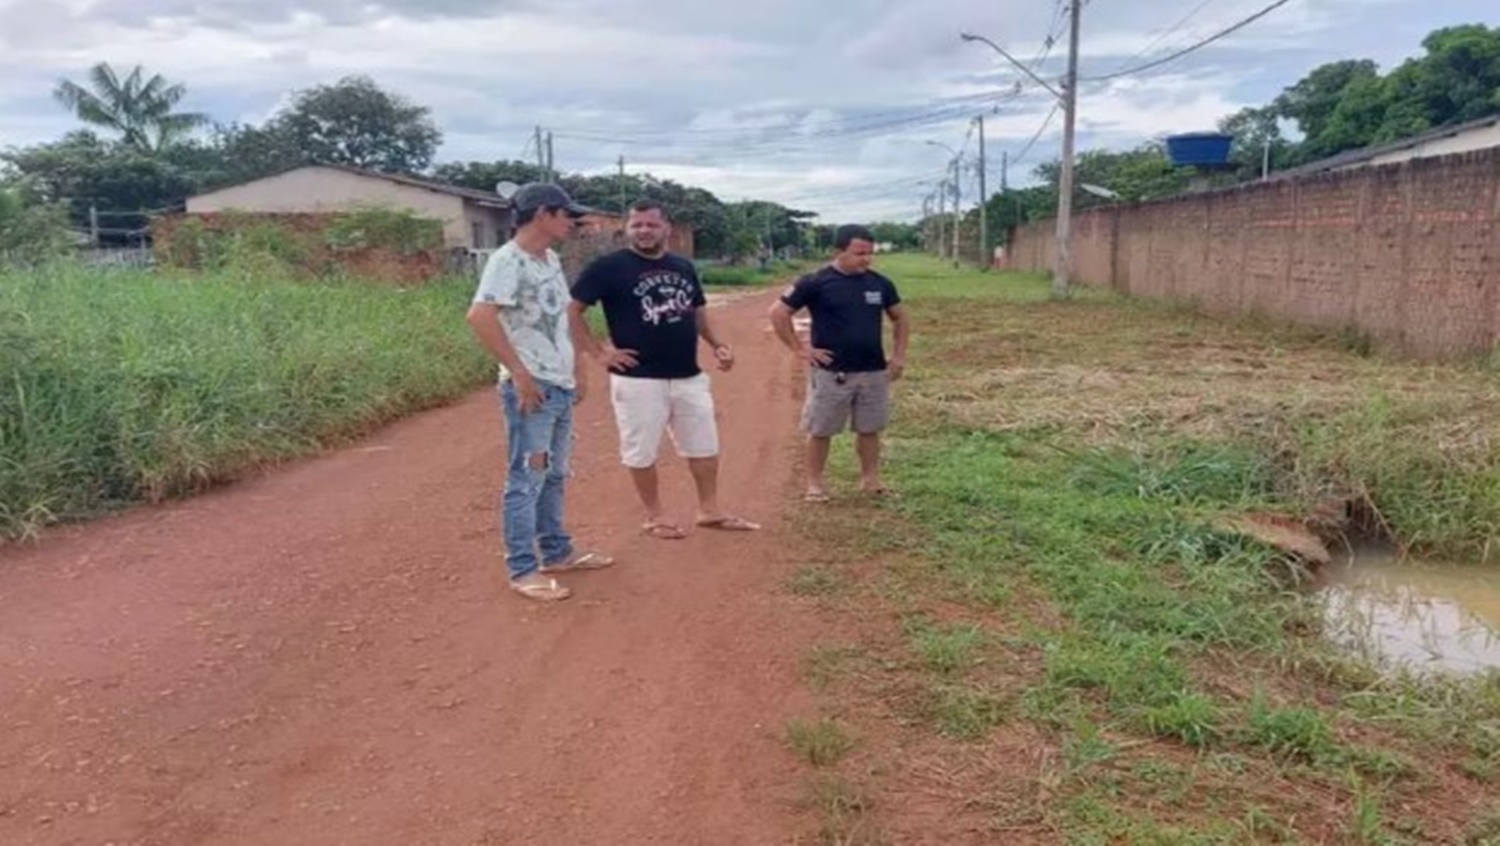 VEREADOR: Edevaldo Neves visita bairro Porto Cristo e ouve demandas dos moradores